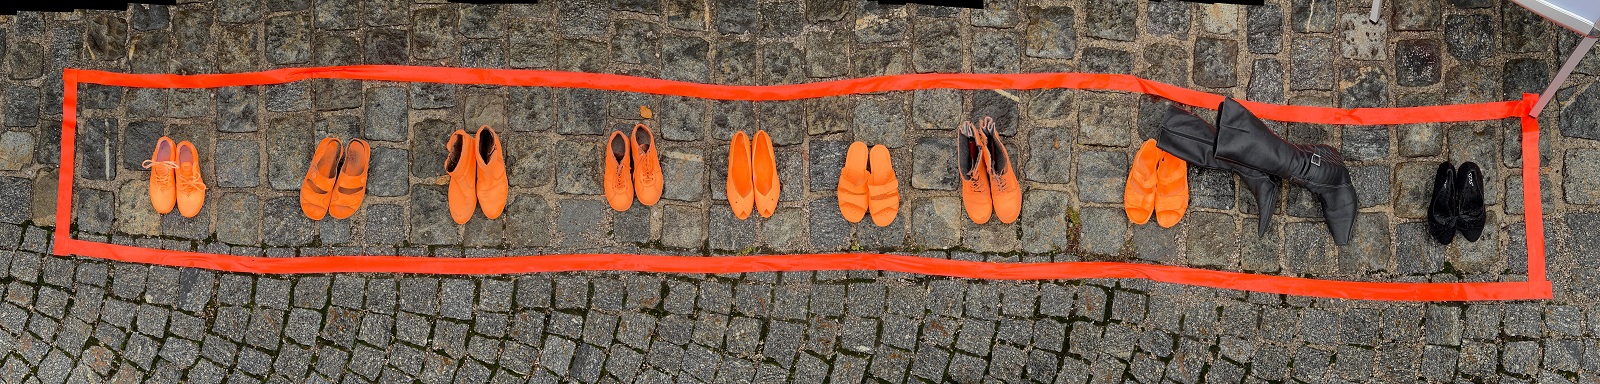 Schuhe in Orange und Schwarz in einer Reihe umgeben von Rand in Orange. Aufgenommen auf Pflastersteinen